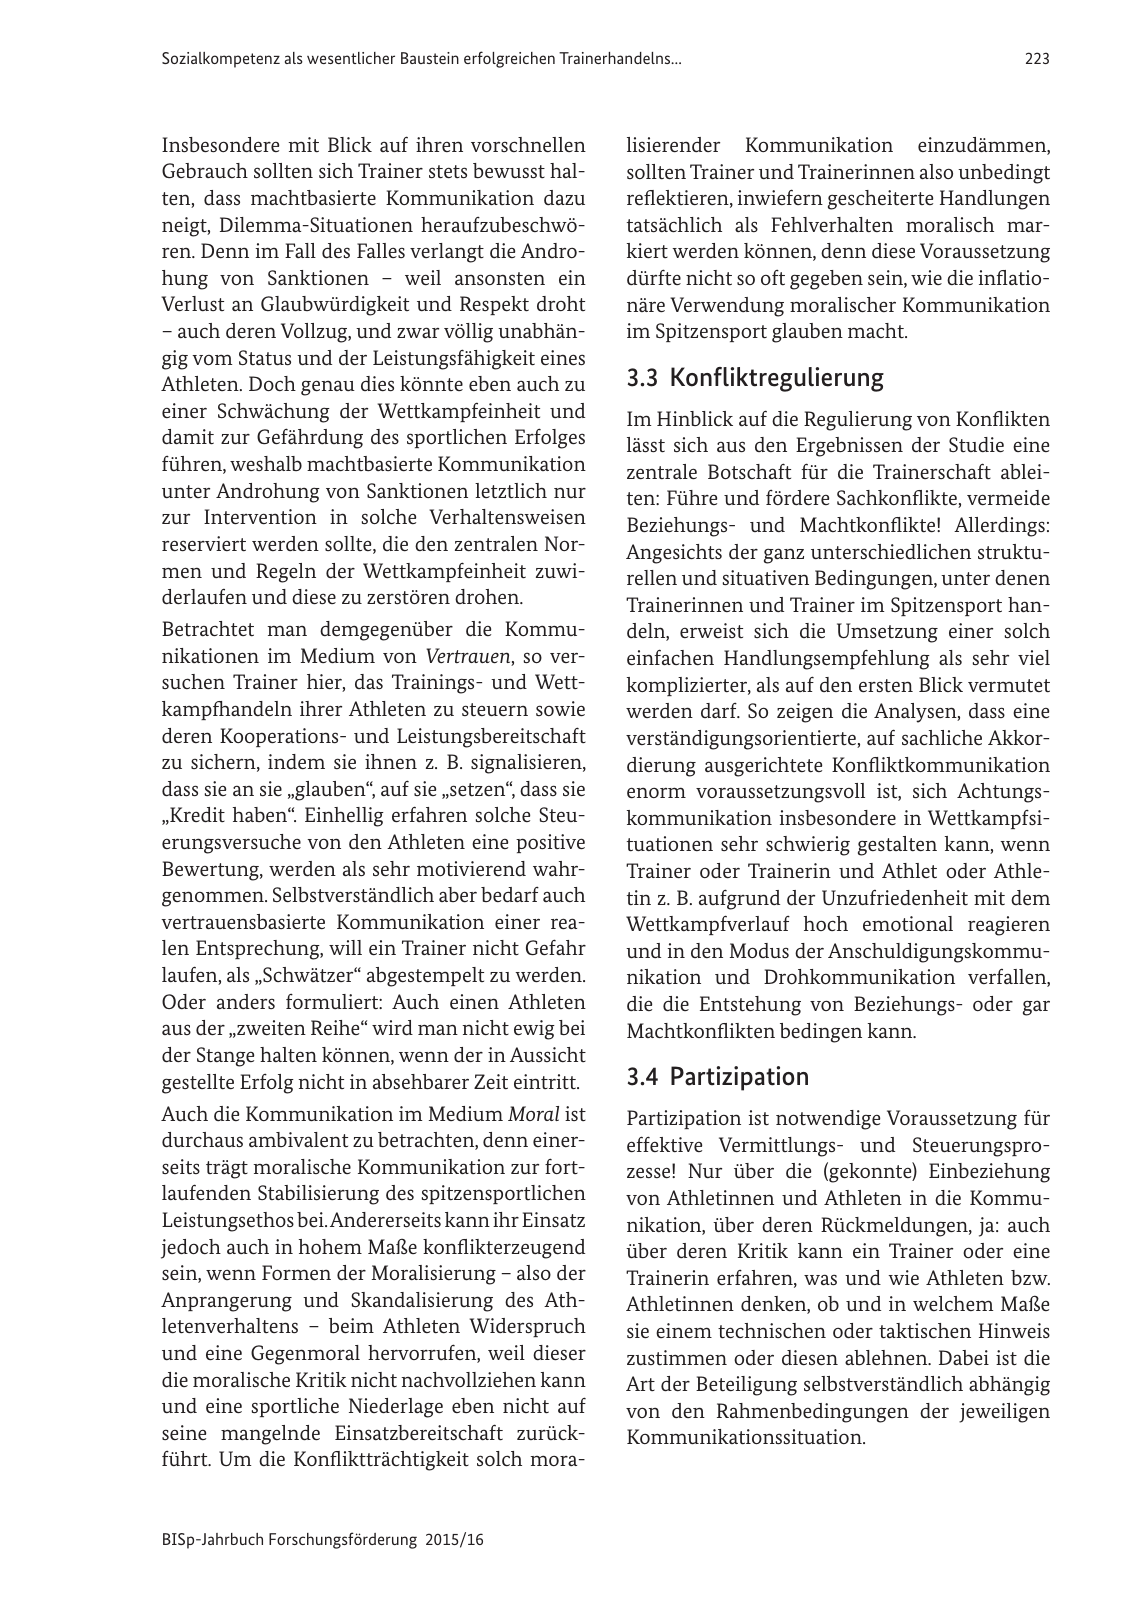 Vorschau BISp-Jahrbuch Forschungsförderung 2015/16 Seite 225